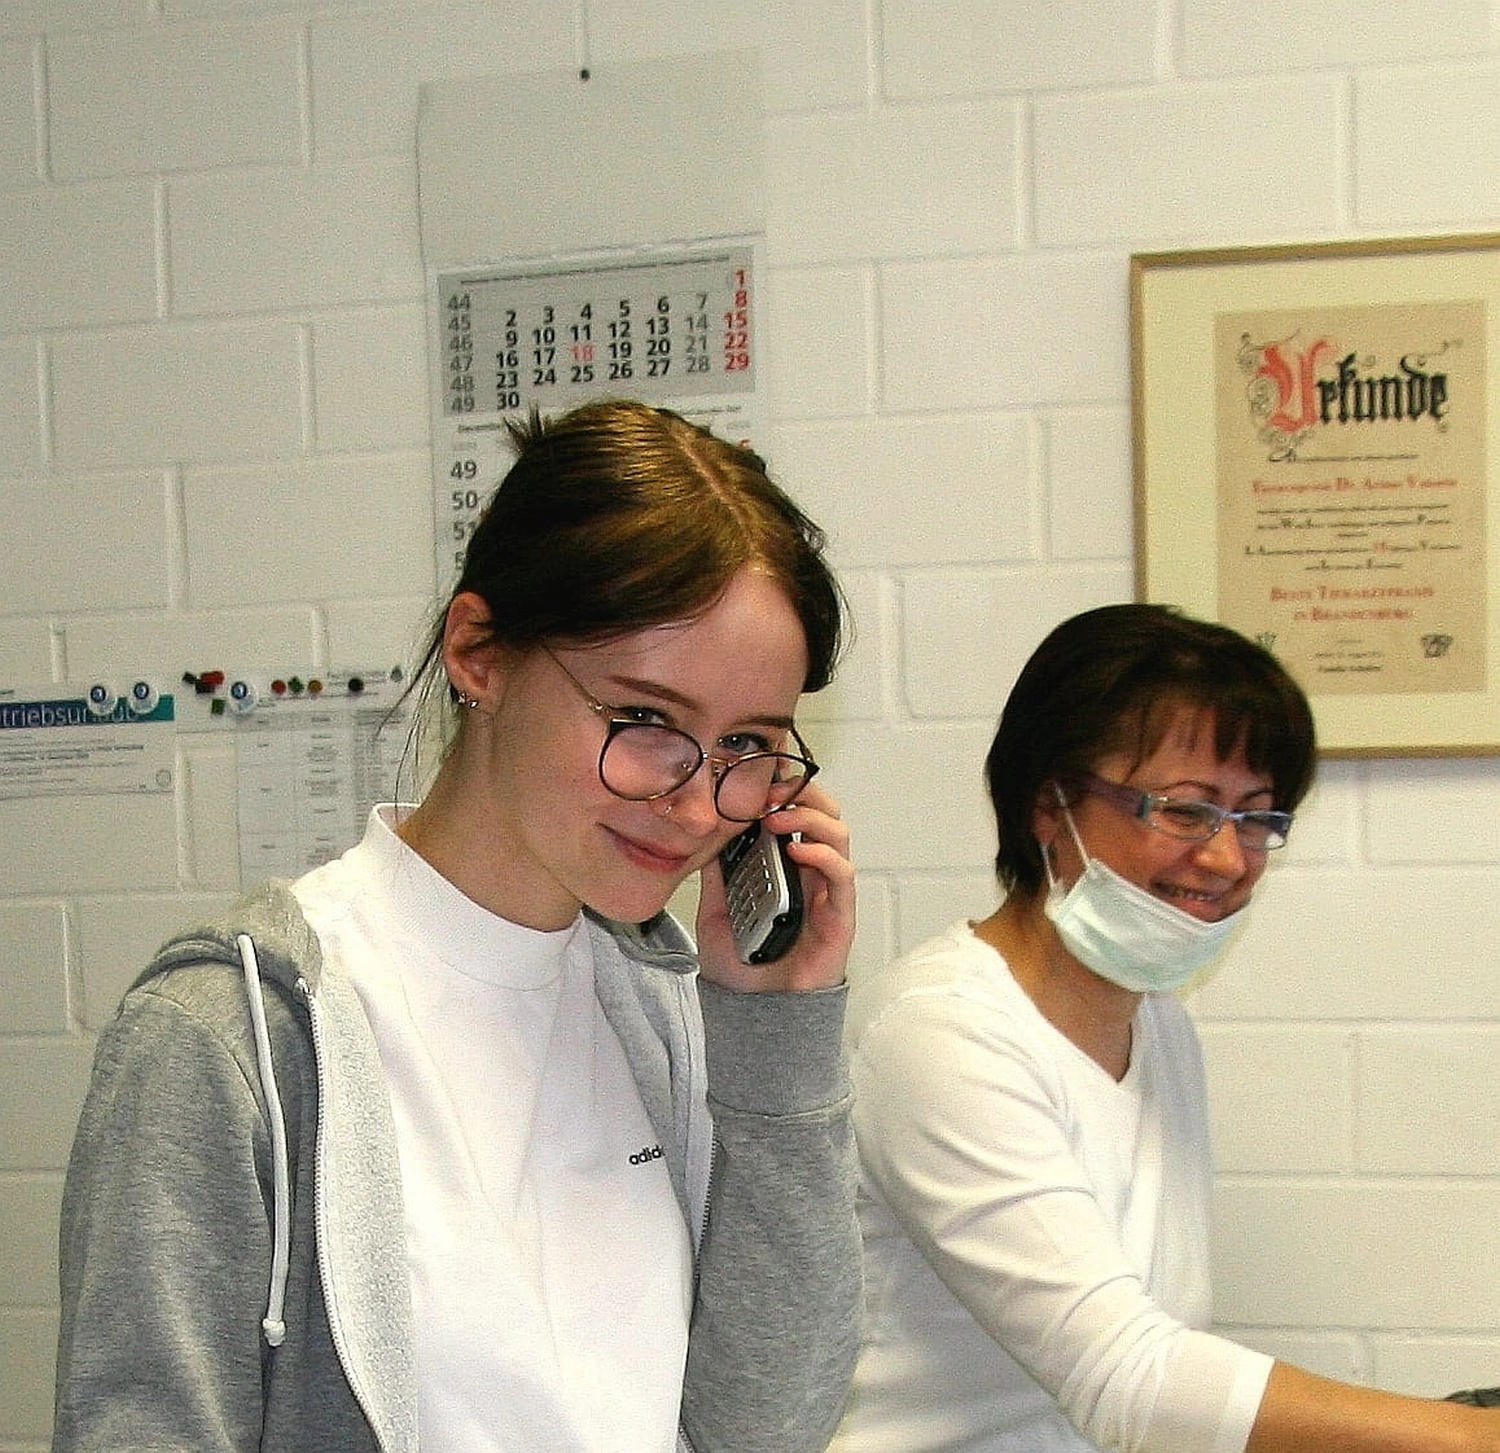 Krankenhauspersonal und eine junge Frau am Telefon